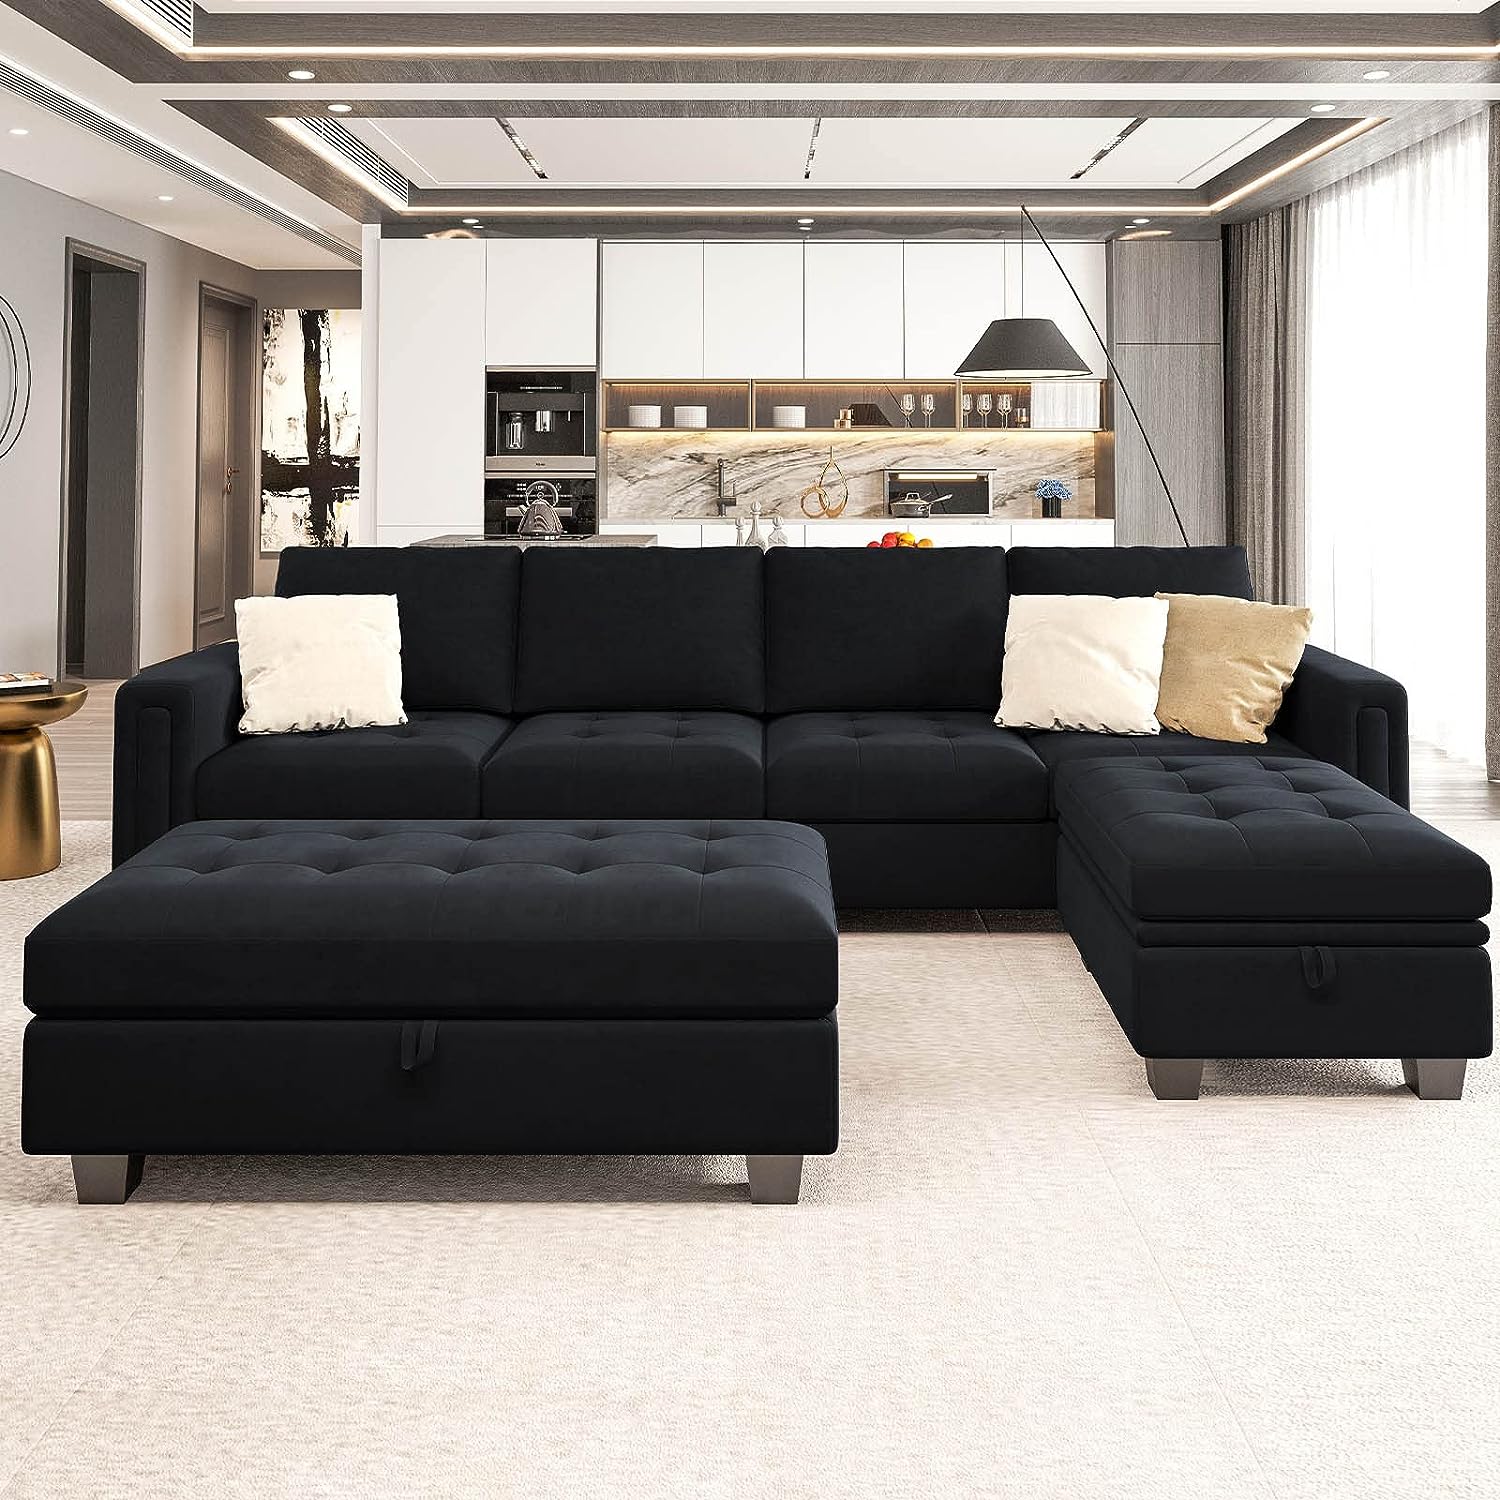 black furniture living room